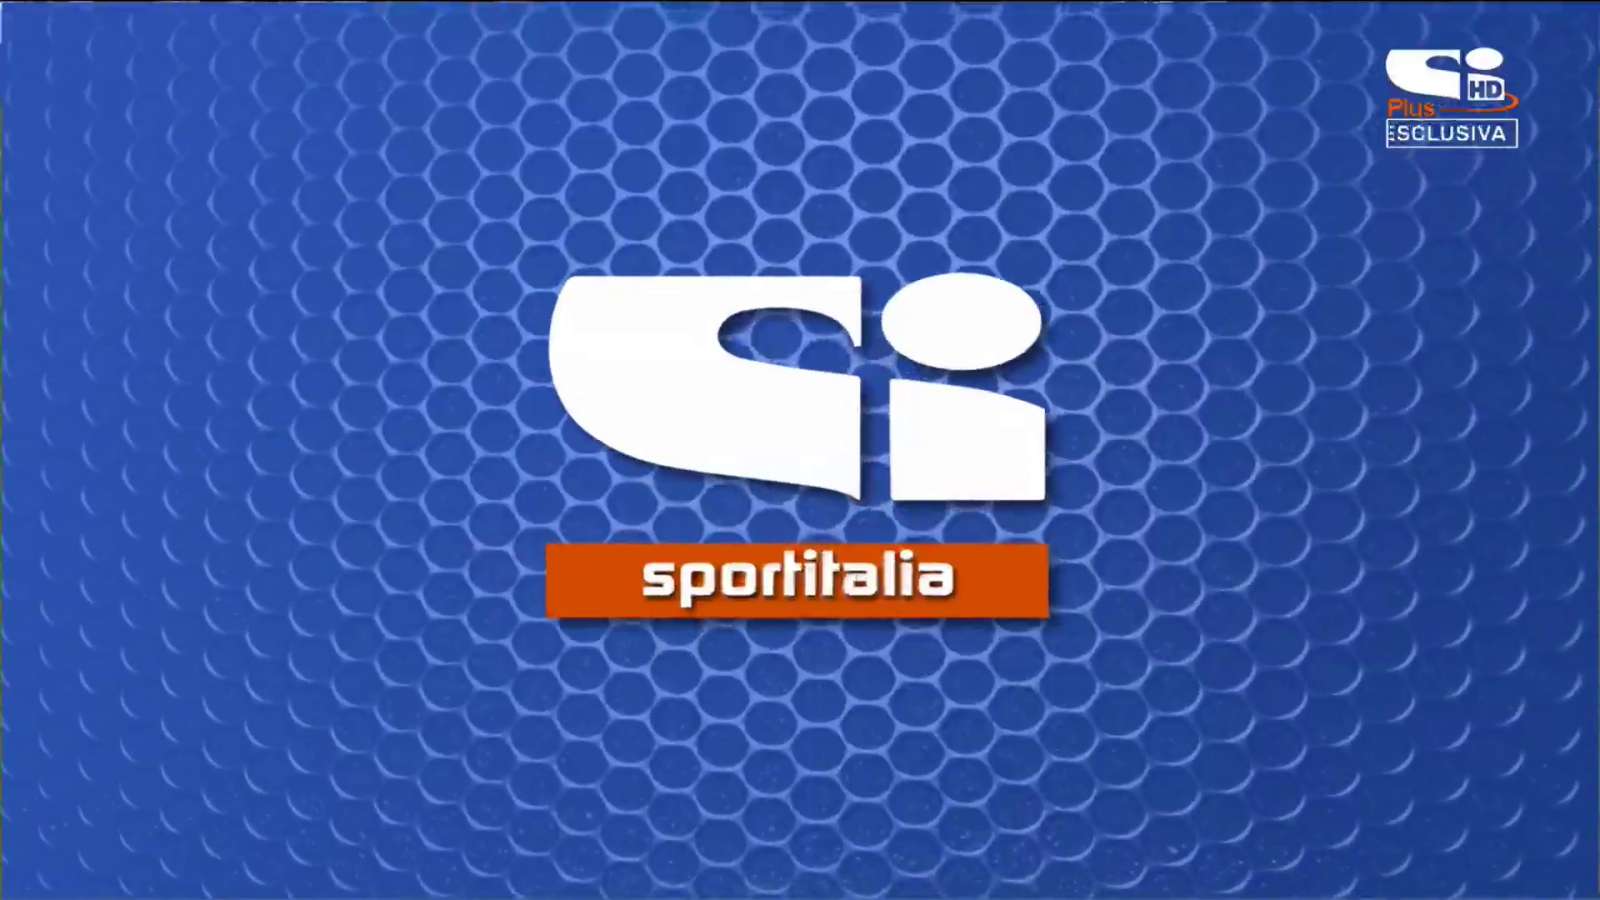 Sportitalia in HD sul canale 60 del digitale terrestre. SoloCalcio visibile anche su Tivùsat